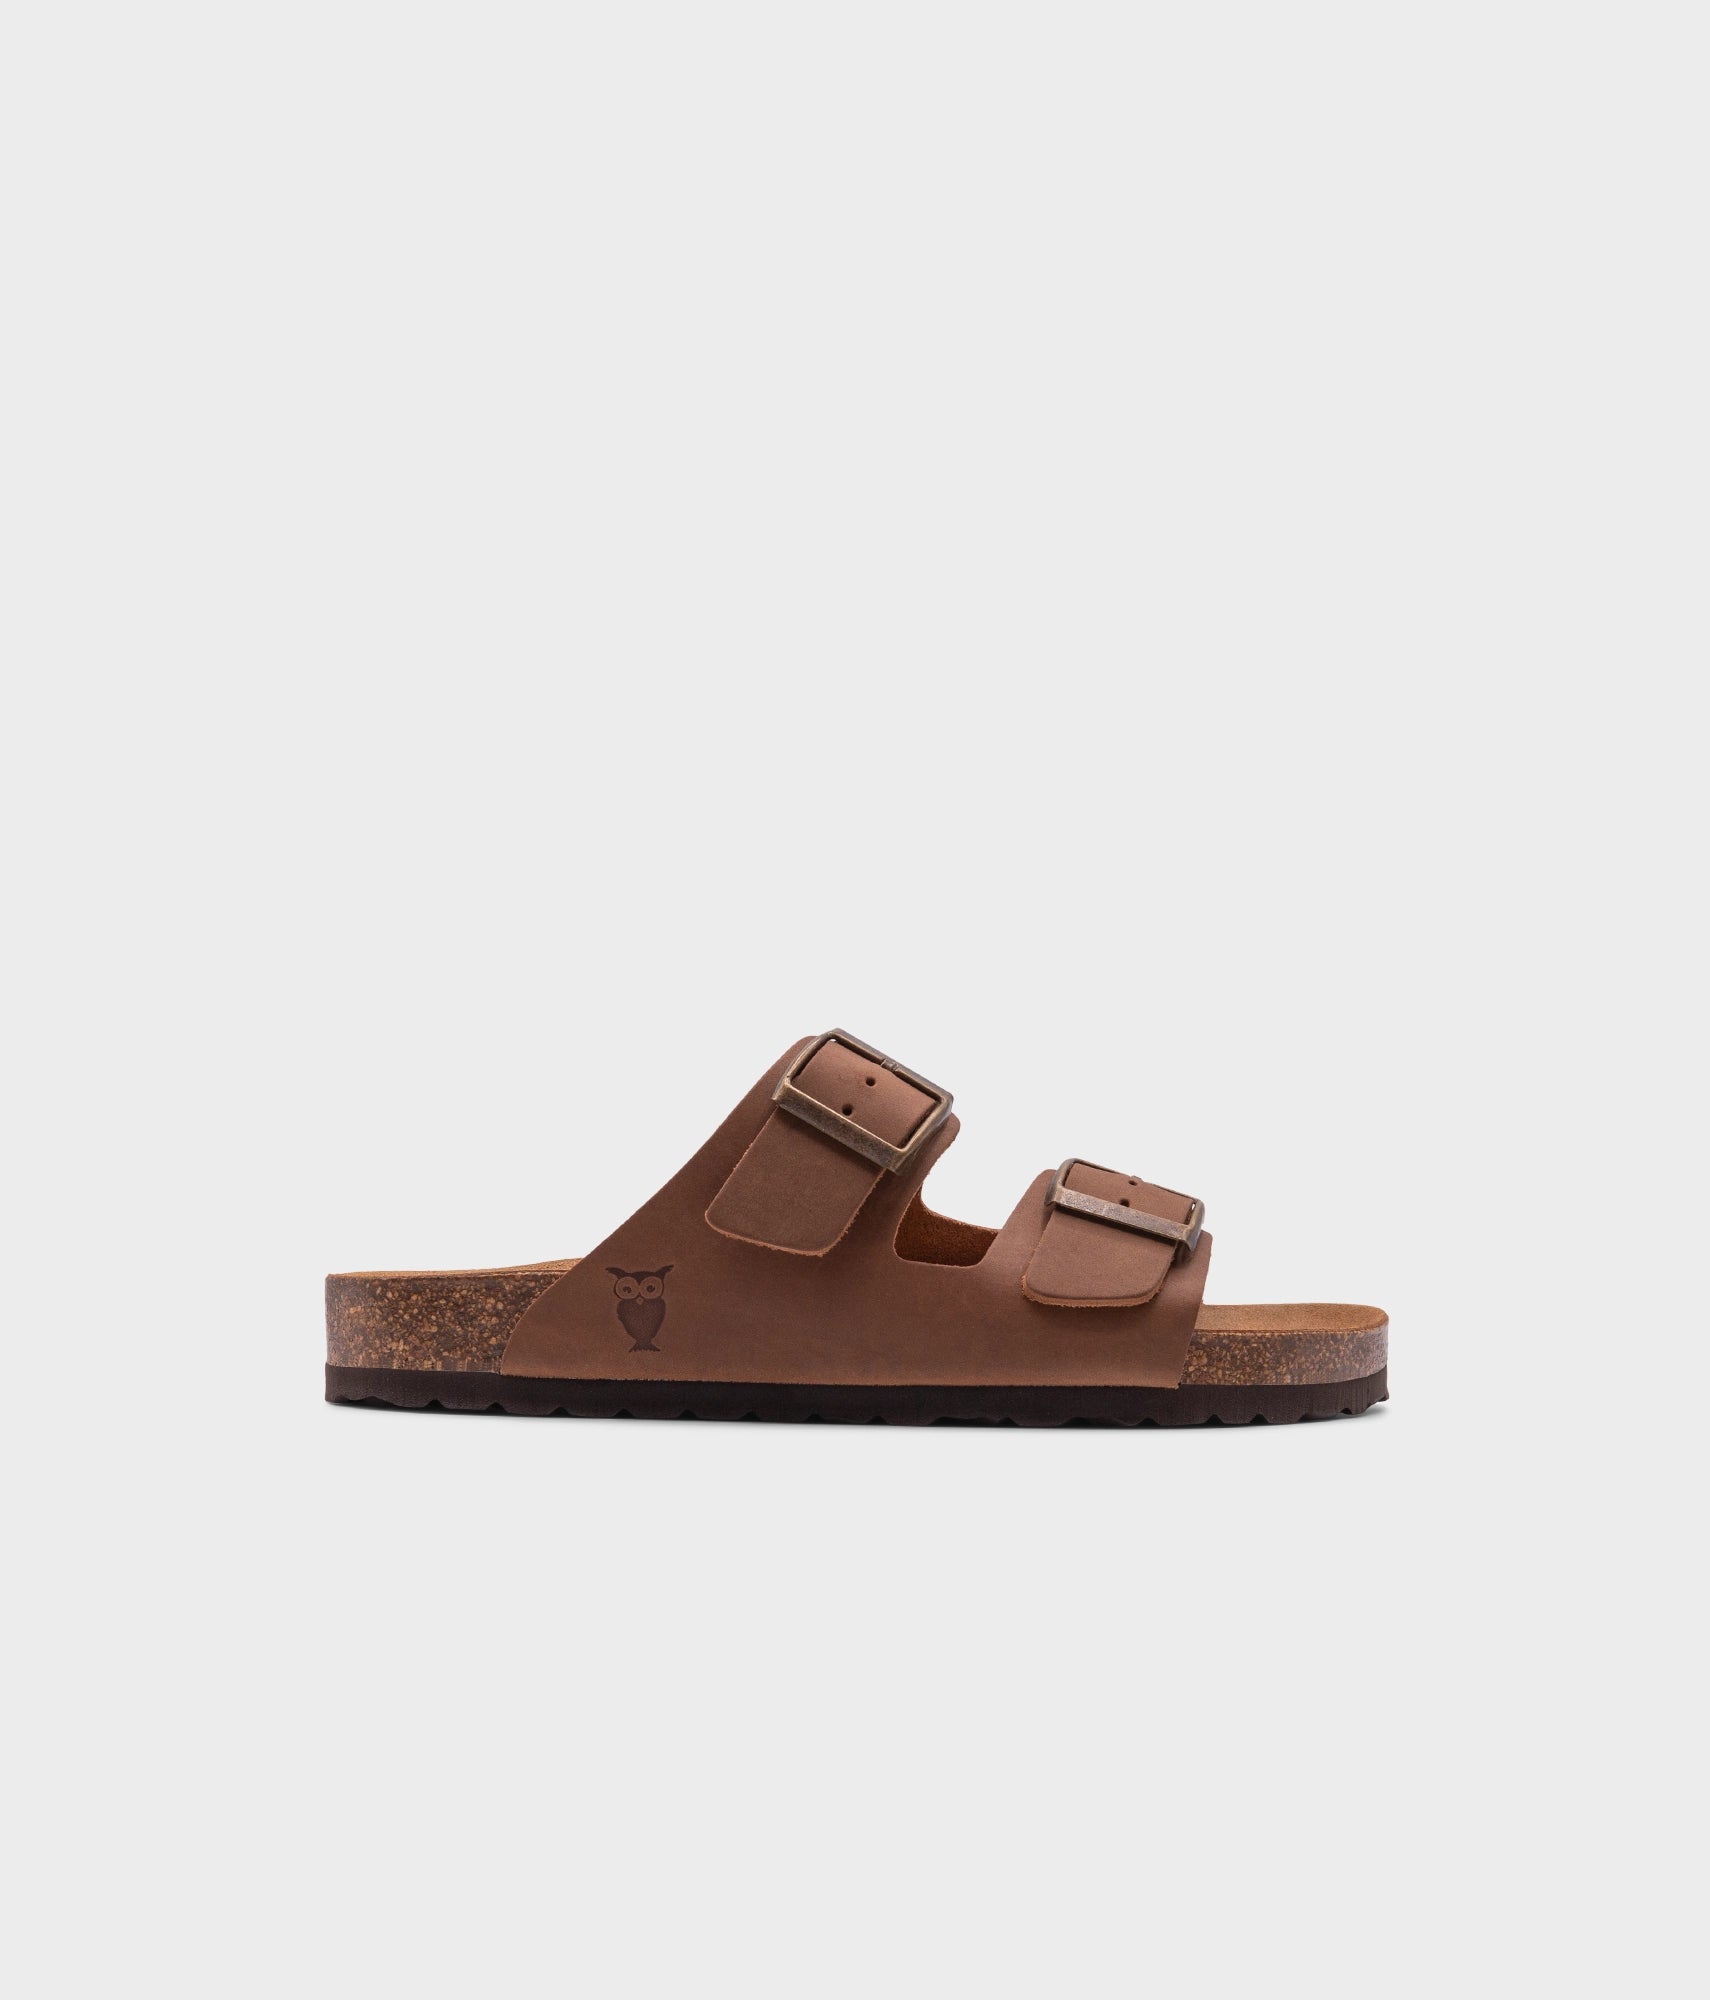 Costa classic cork sandals in hazel brown | Sandgrens